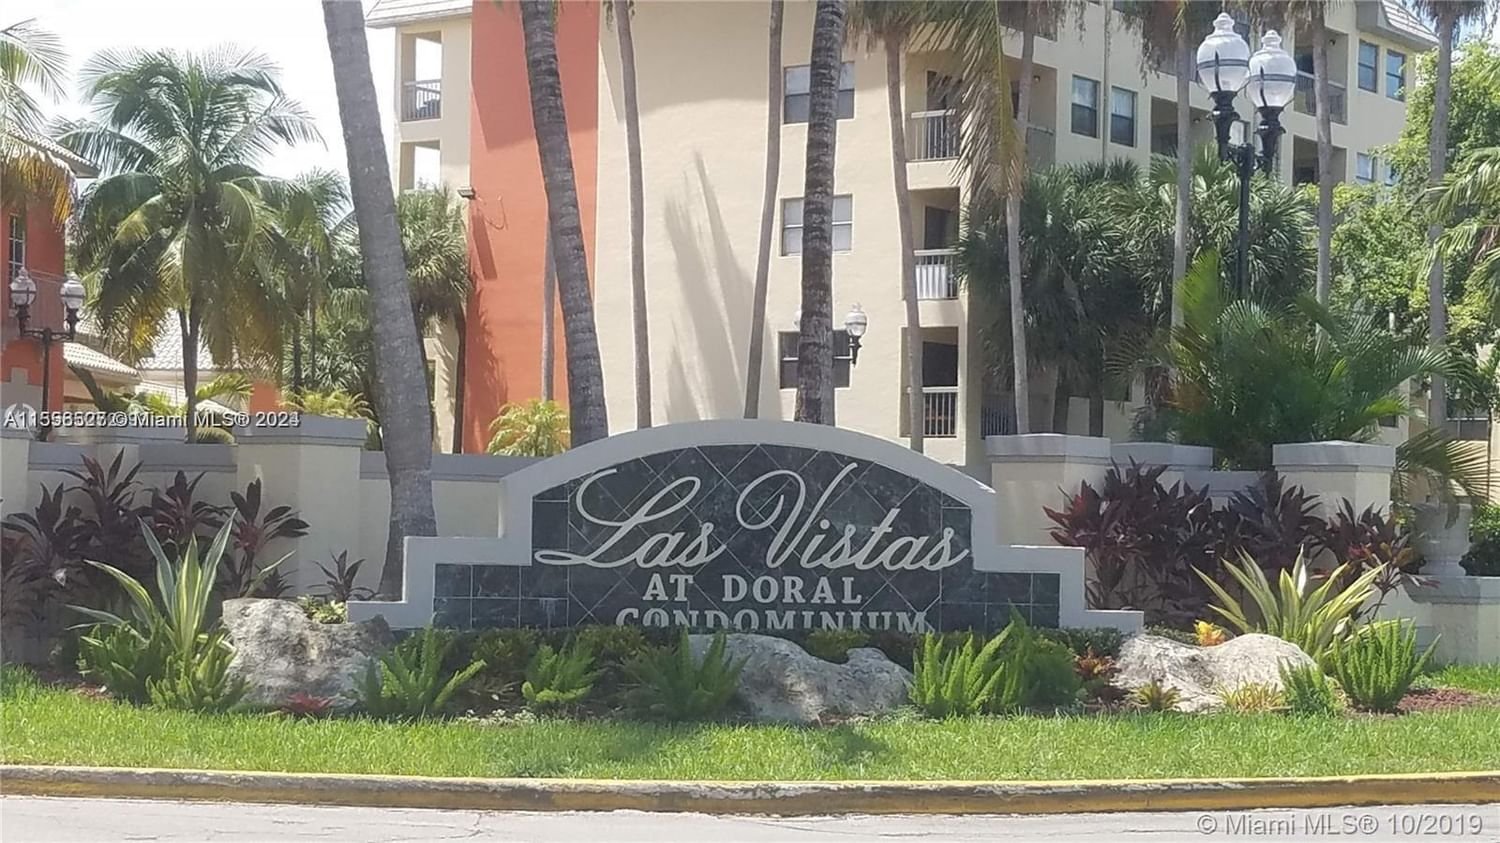 Real estate property located at 8255 Lake Dr #204, Miami-Dade County, LAS VISTAS AT DORAL CONDO, Doral, FL